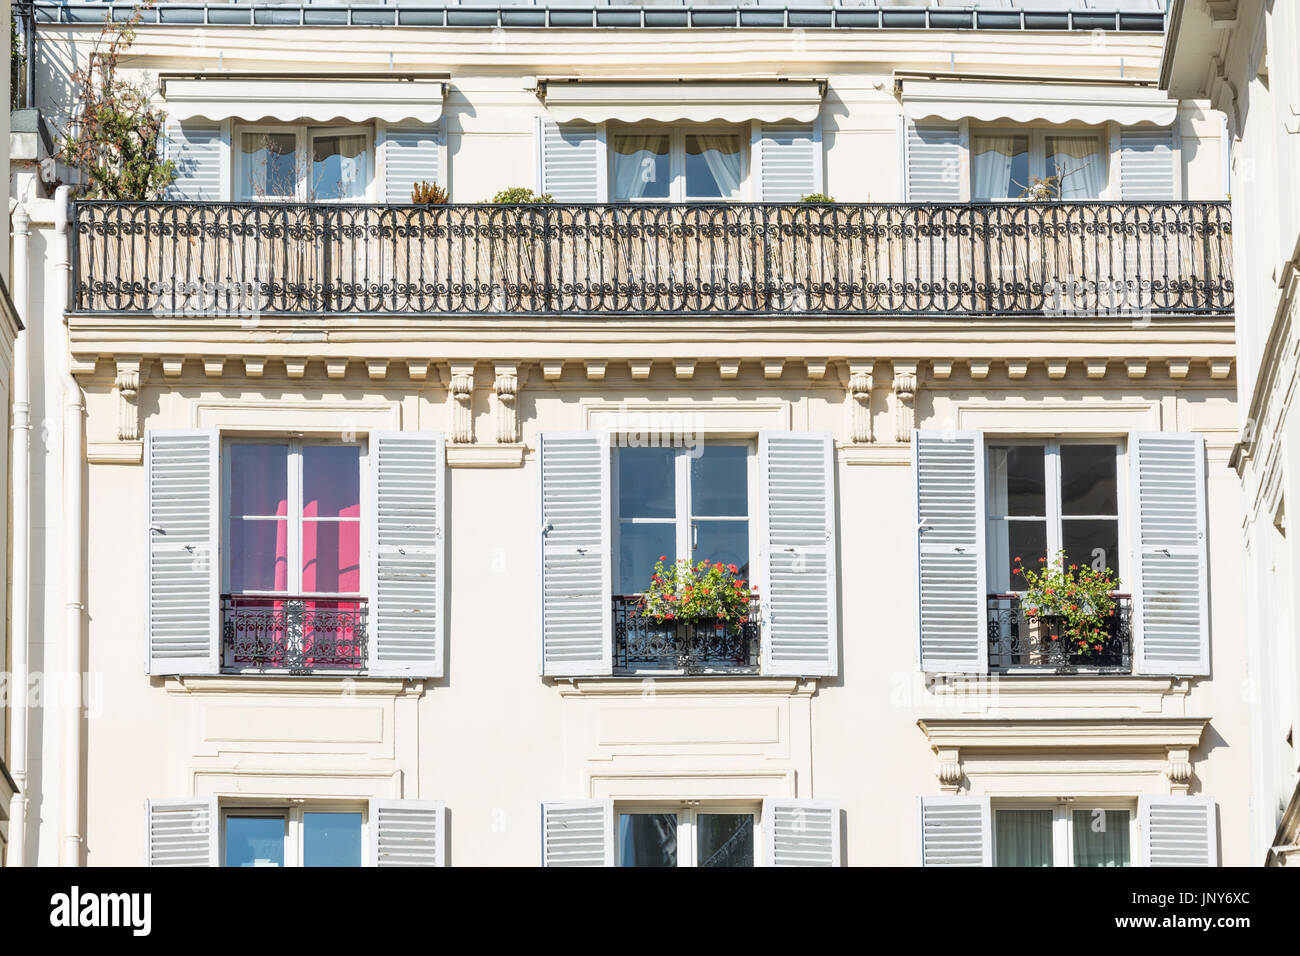 Paris, France - 29 Février 2016 : appartement haussmannien typique façade avec volets, rideaux, balcons, auvents et les jardinières, Paris, France. Banque D'Images